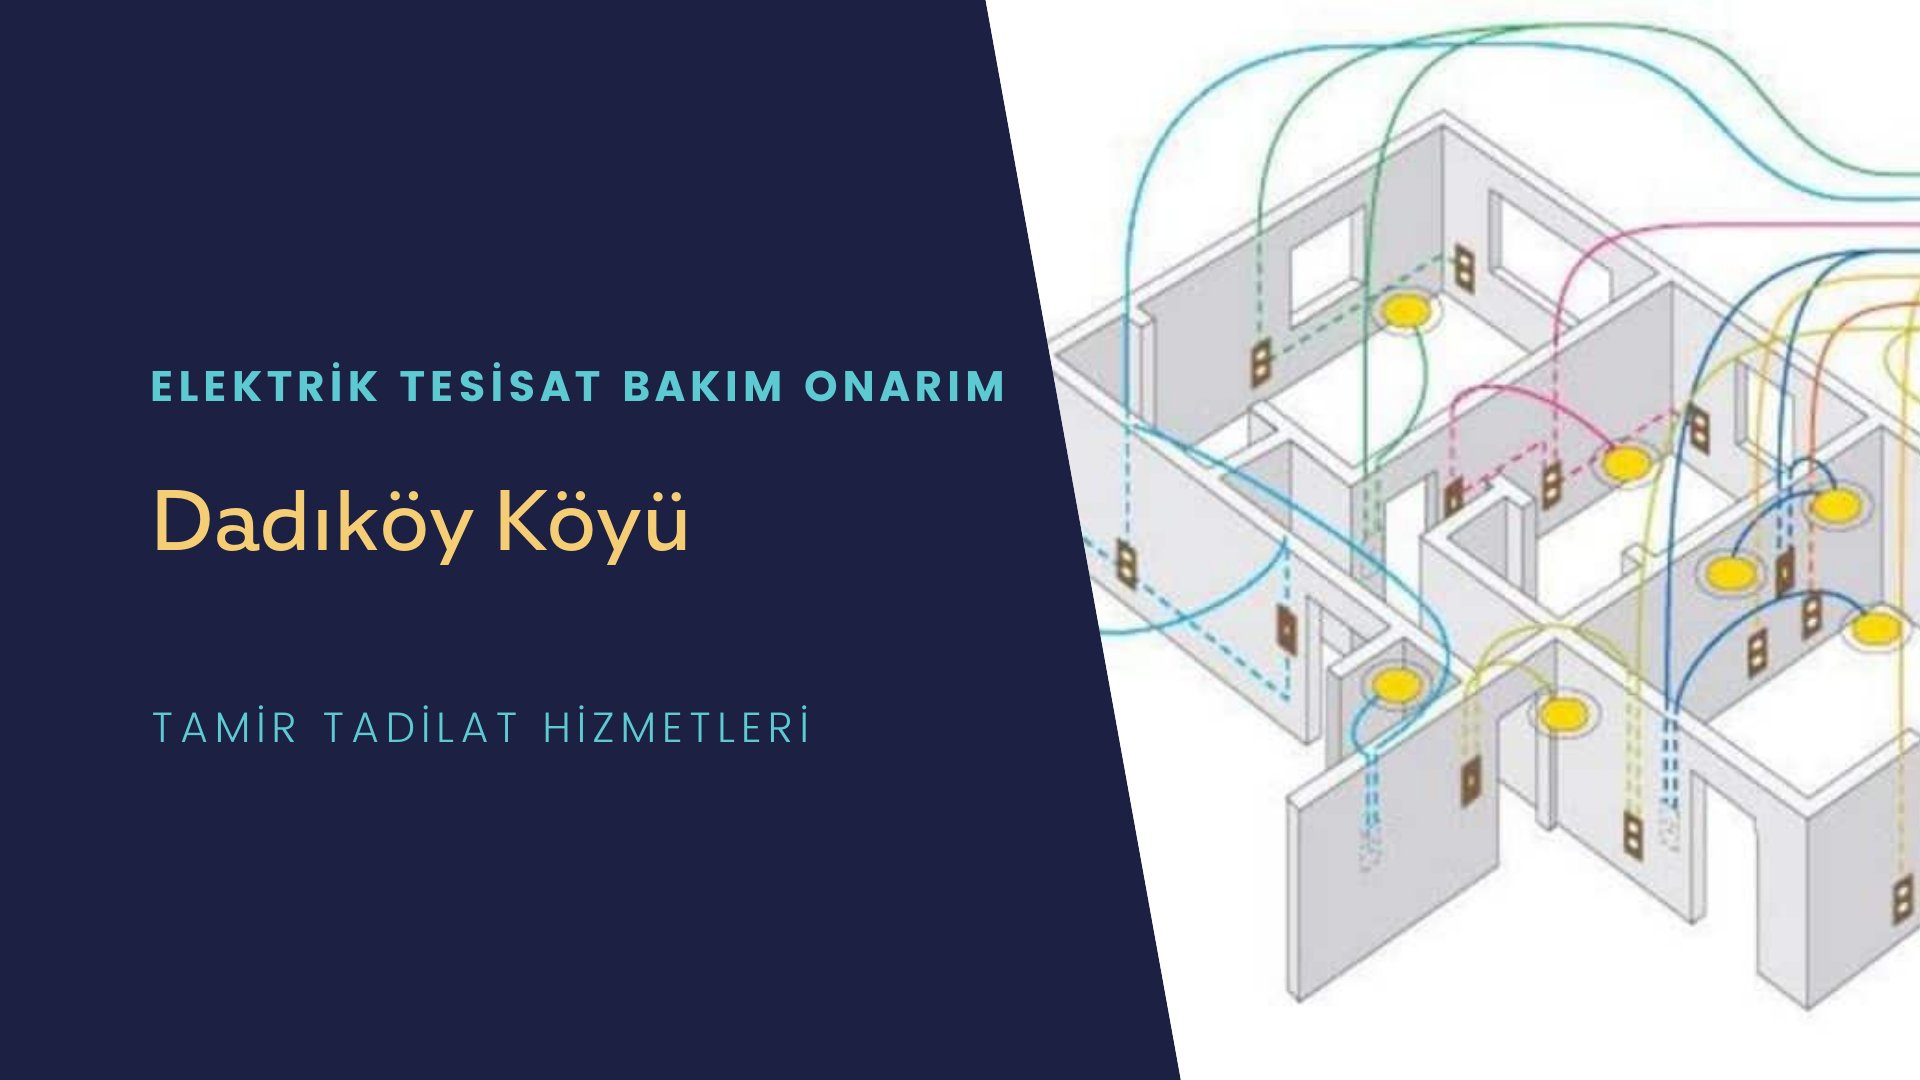 Dadıköy Köyü  elektrik tesisatı ustalarımı arıyorsunuz doğru adrestenizi Dadıköy Köyü elektrik tesisatı ustalarımız 7/24 sizlere hizmet vermekten mutluluk duyar.